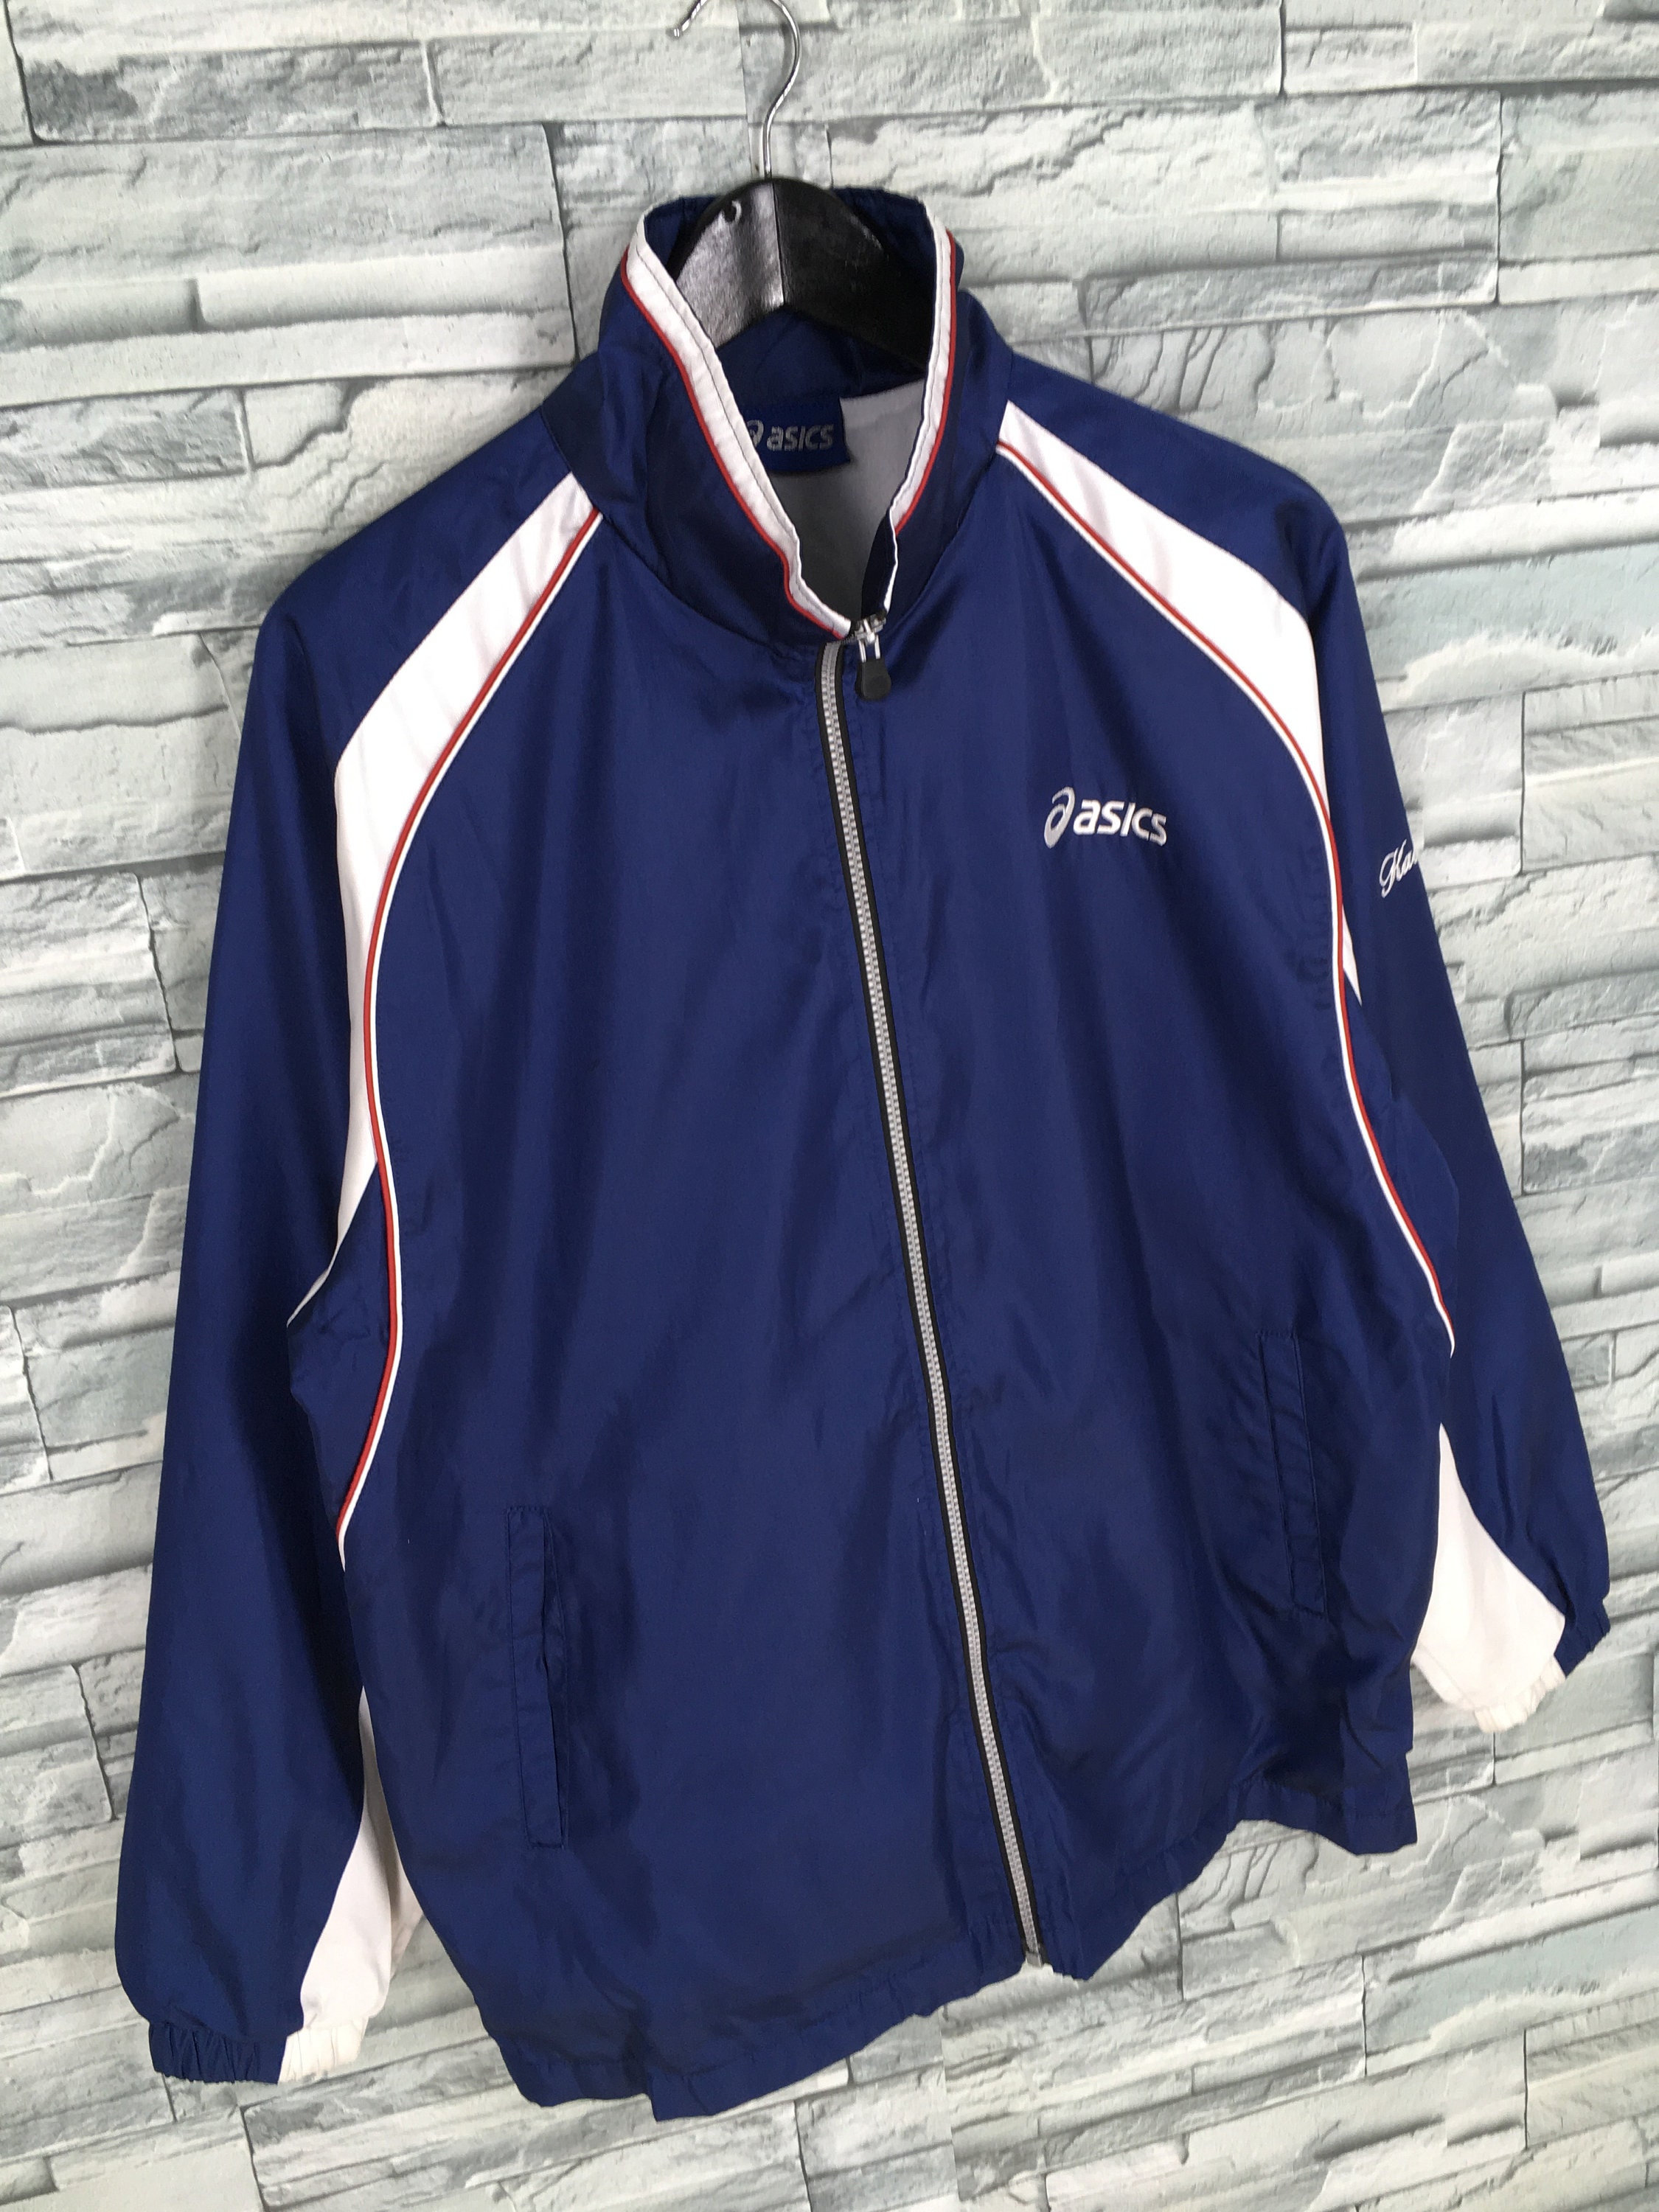 Asics Japan Windbreaker Jacket Hoodie Medium Vintage 90s Asics | Etsy